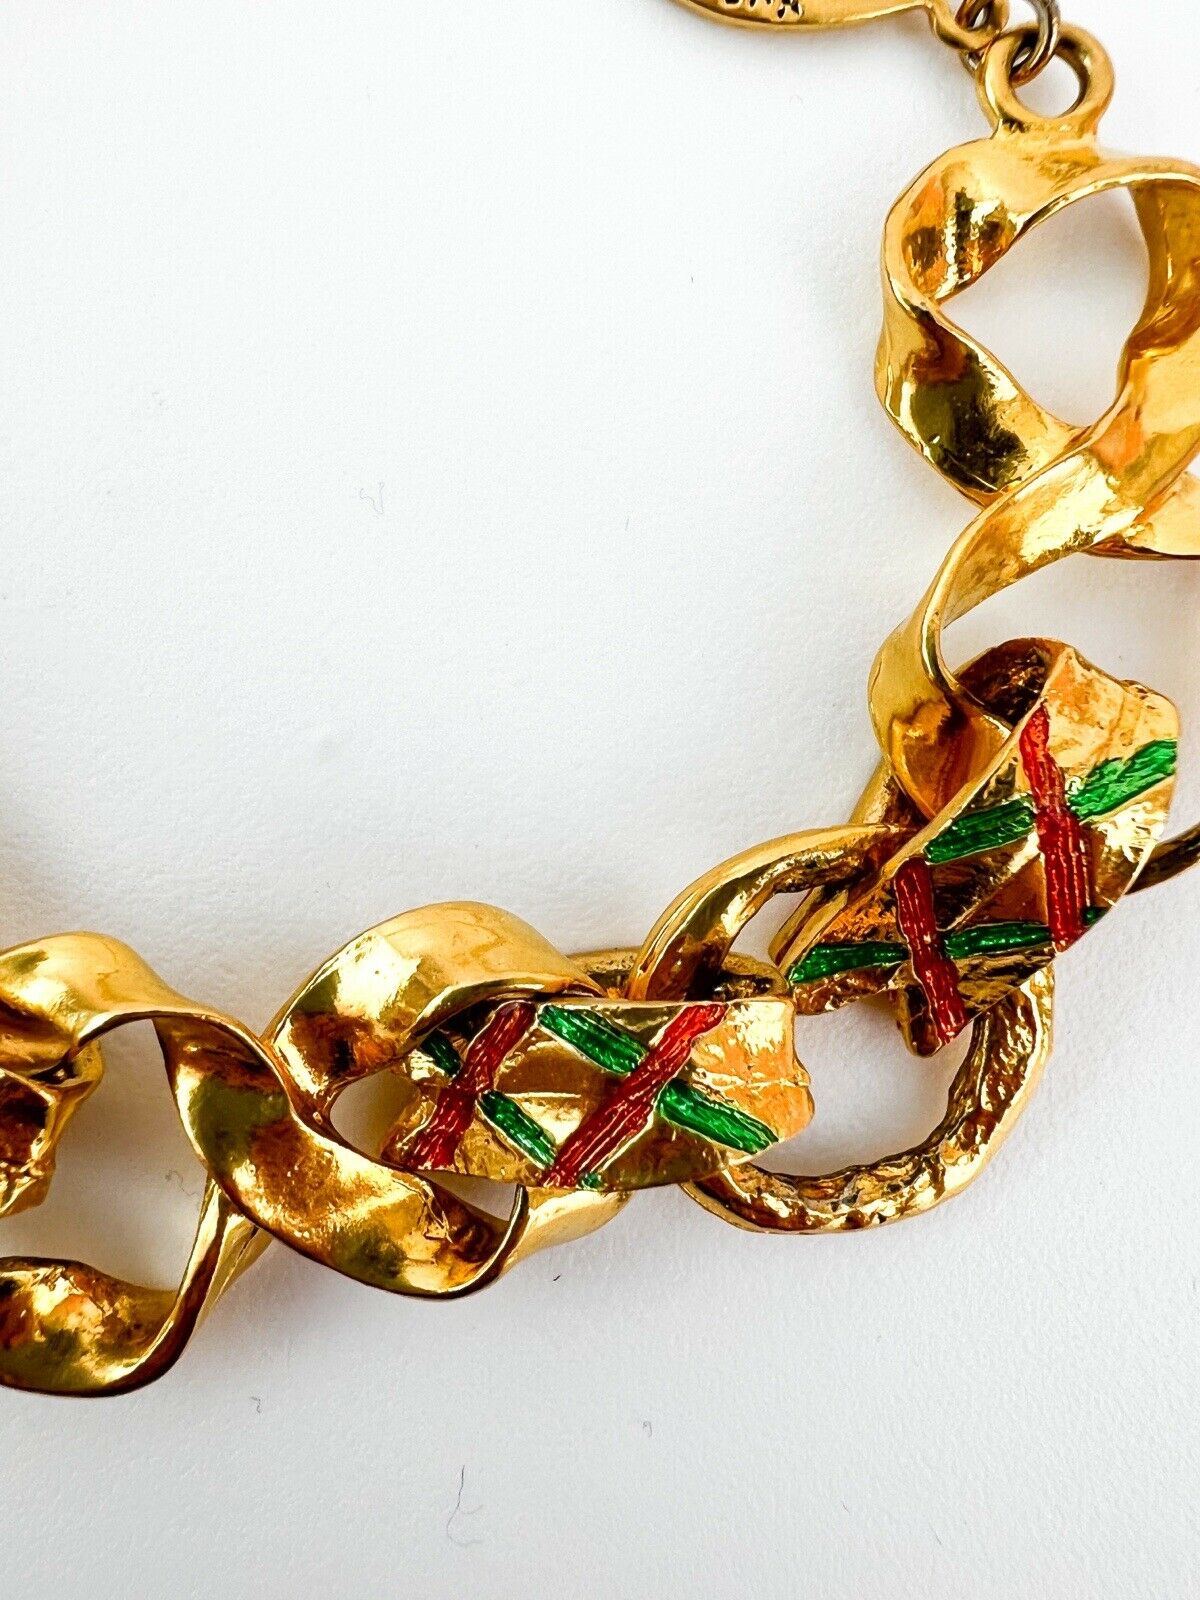 【SOLD OUT】 YSL Yves Saint Laurent Vintage Link Bracelet Gold Tone